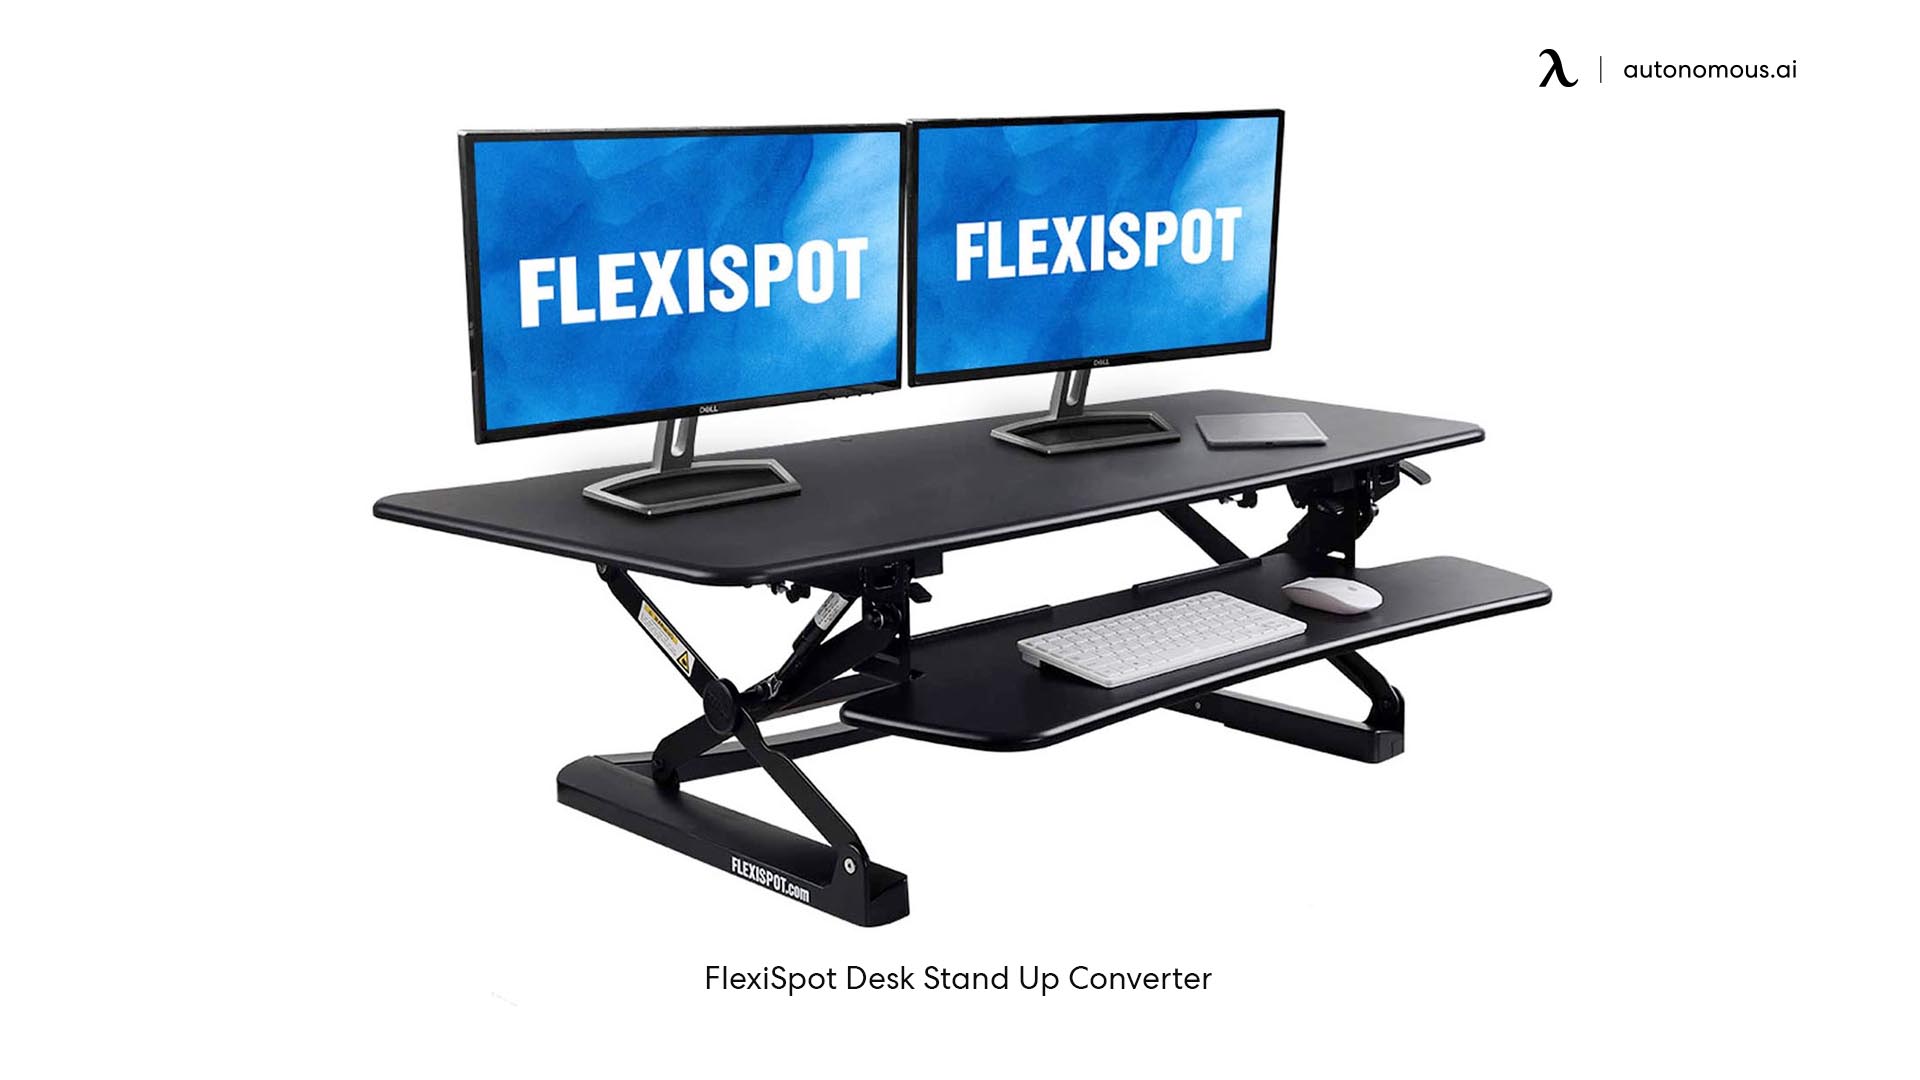 FlexiSpot Desk Stand Up Converter